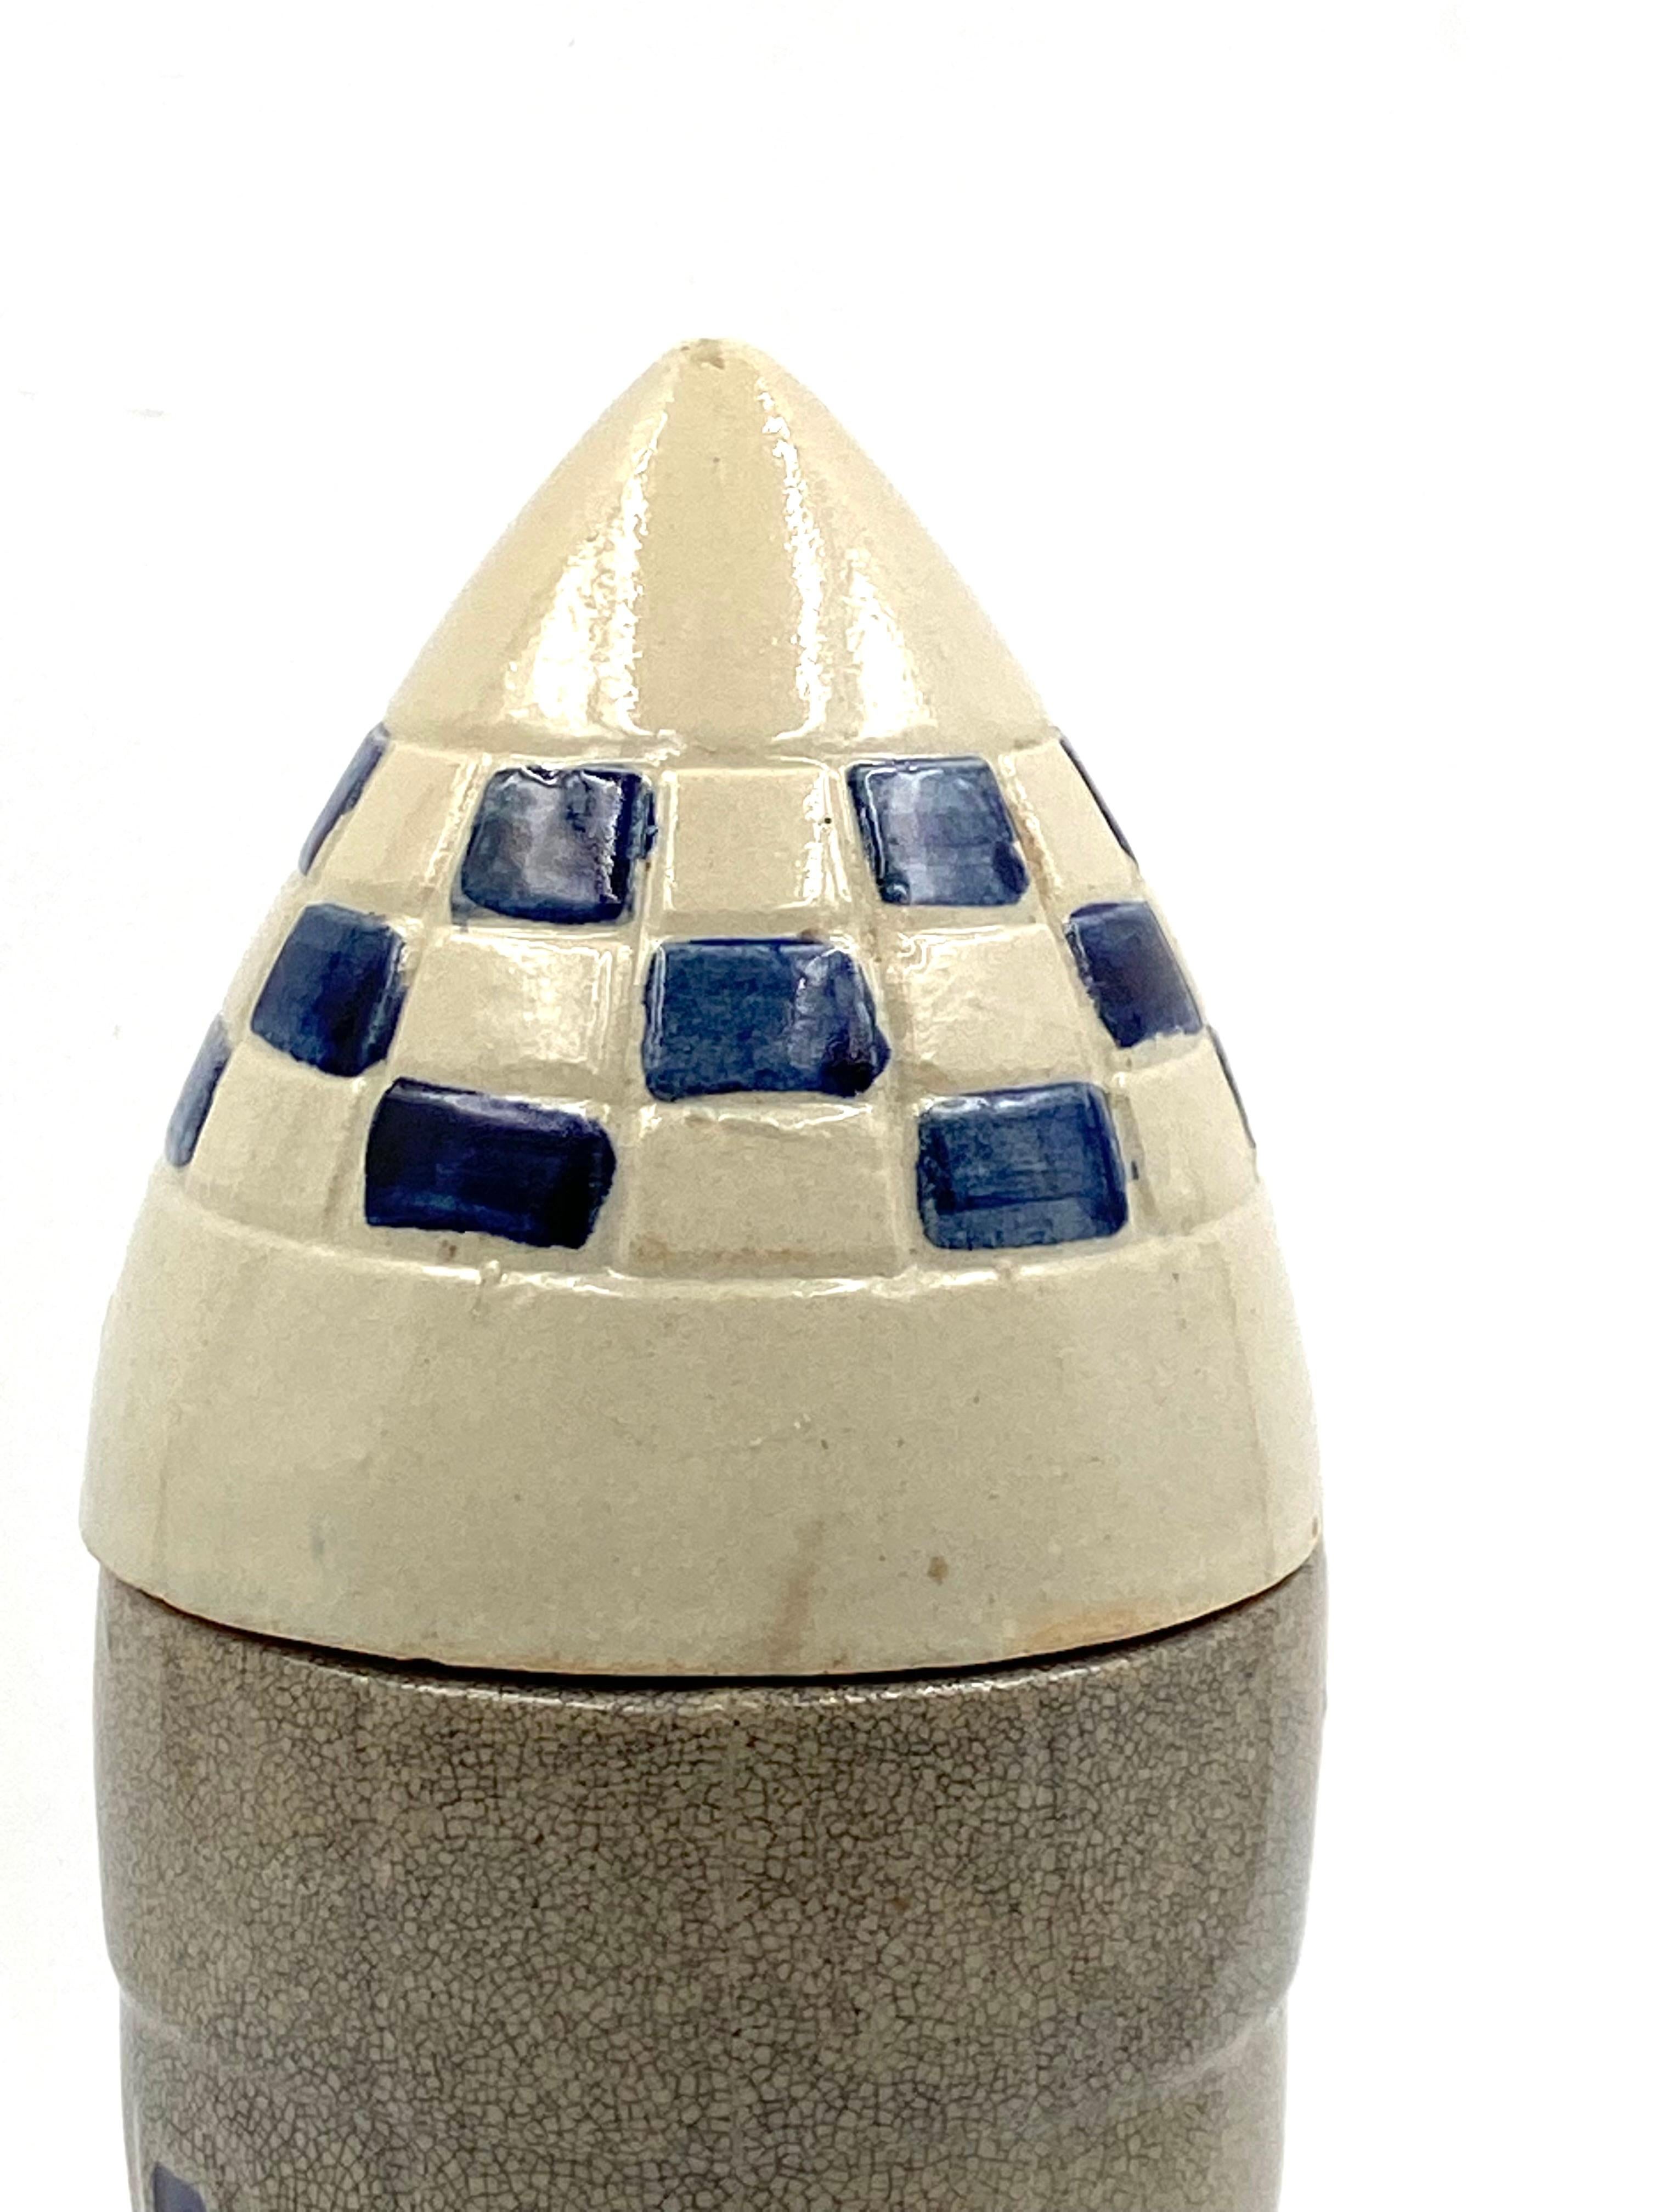 Ceramic Rocket / Spaceship Bottle / Decanter, France, 1940s-1950s For Sale 8